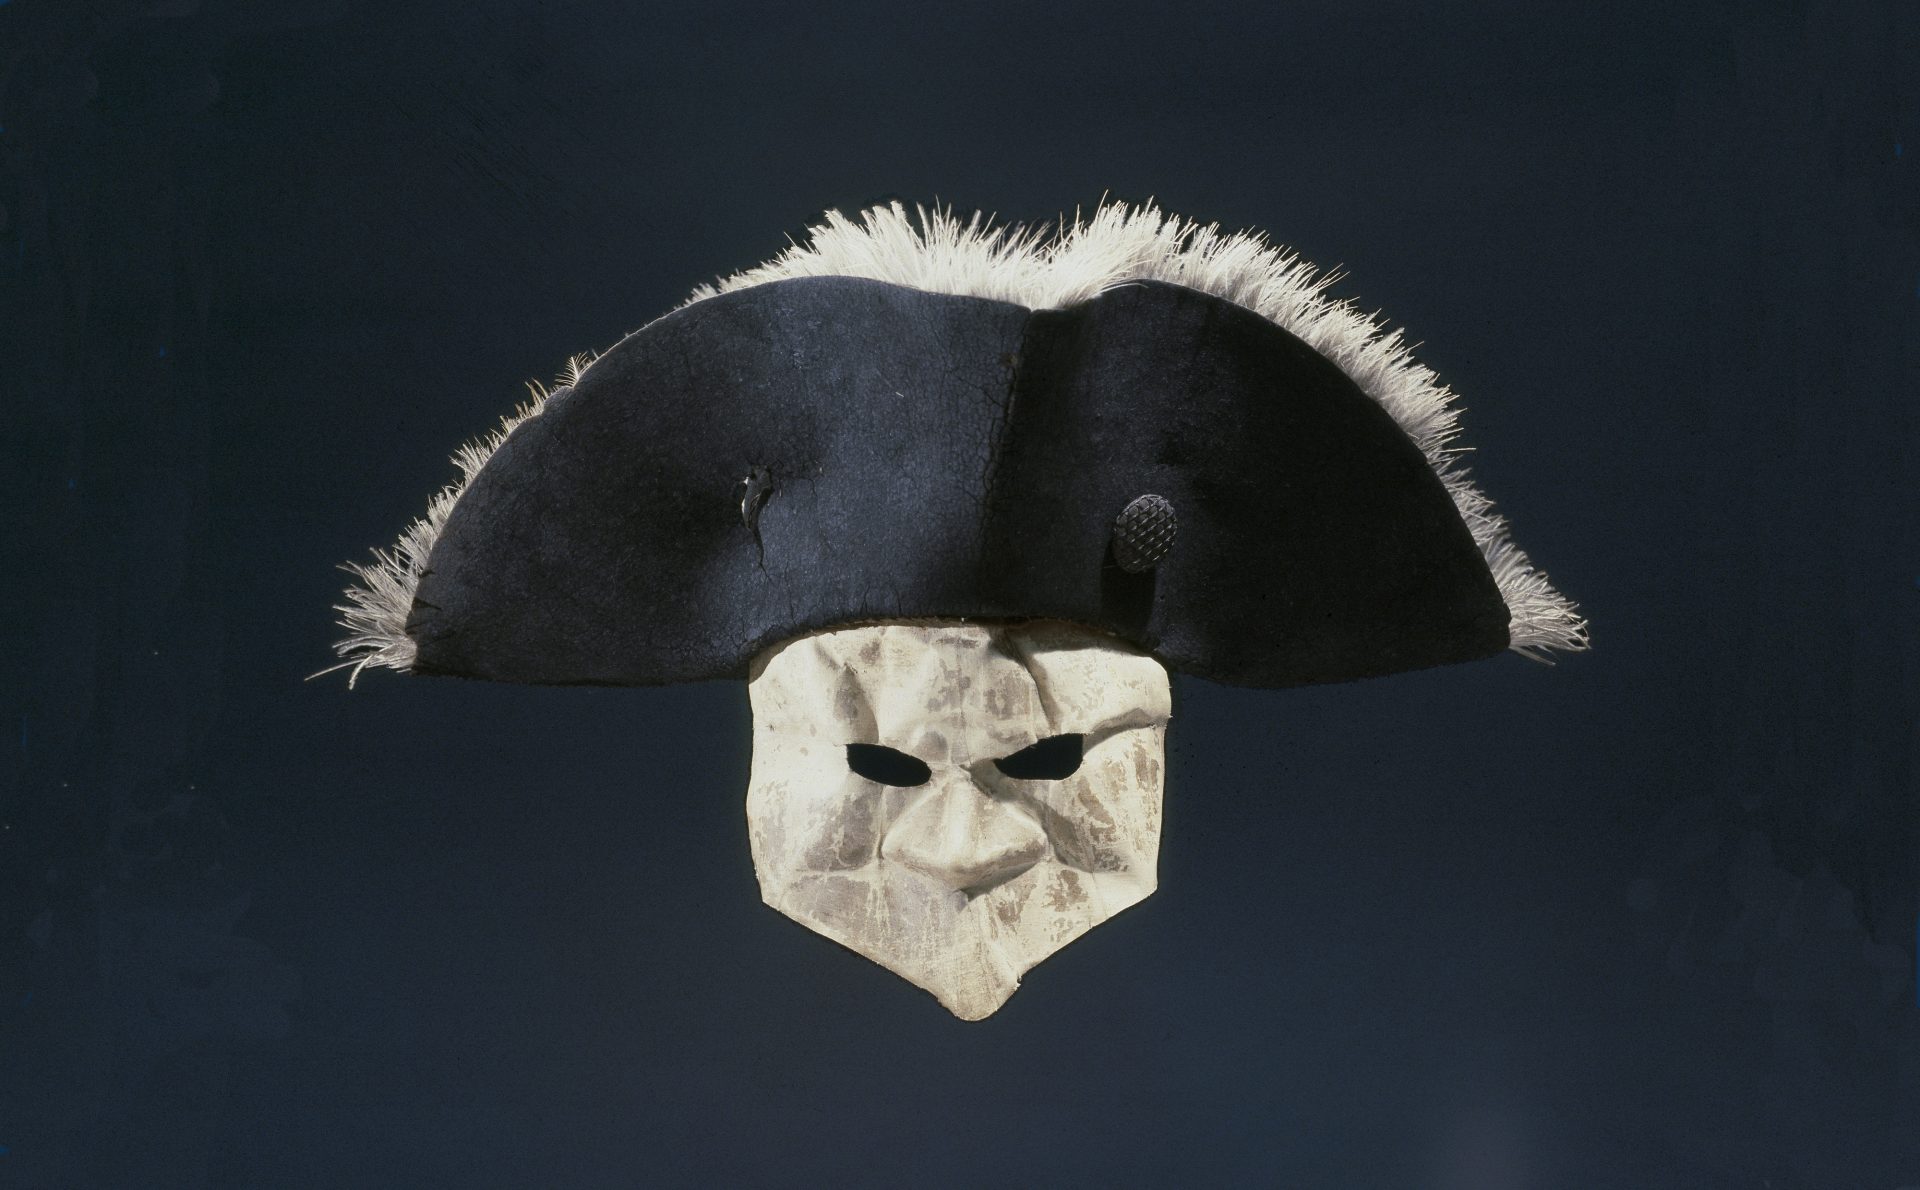 Gustav den tredjes maskeradmask och hatt.